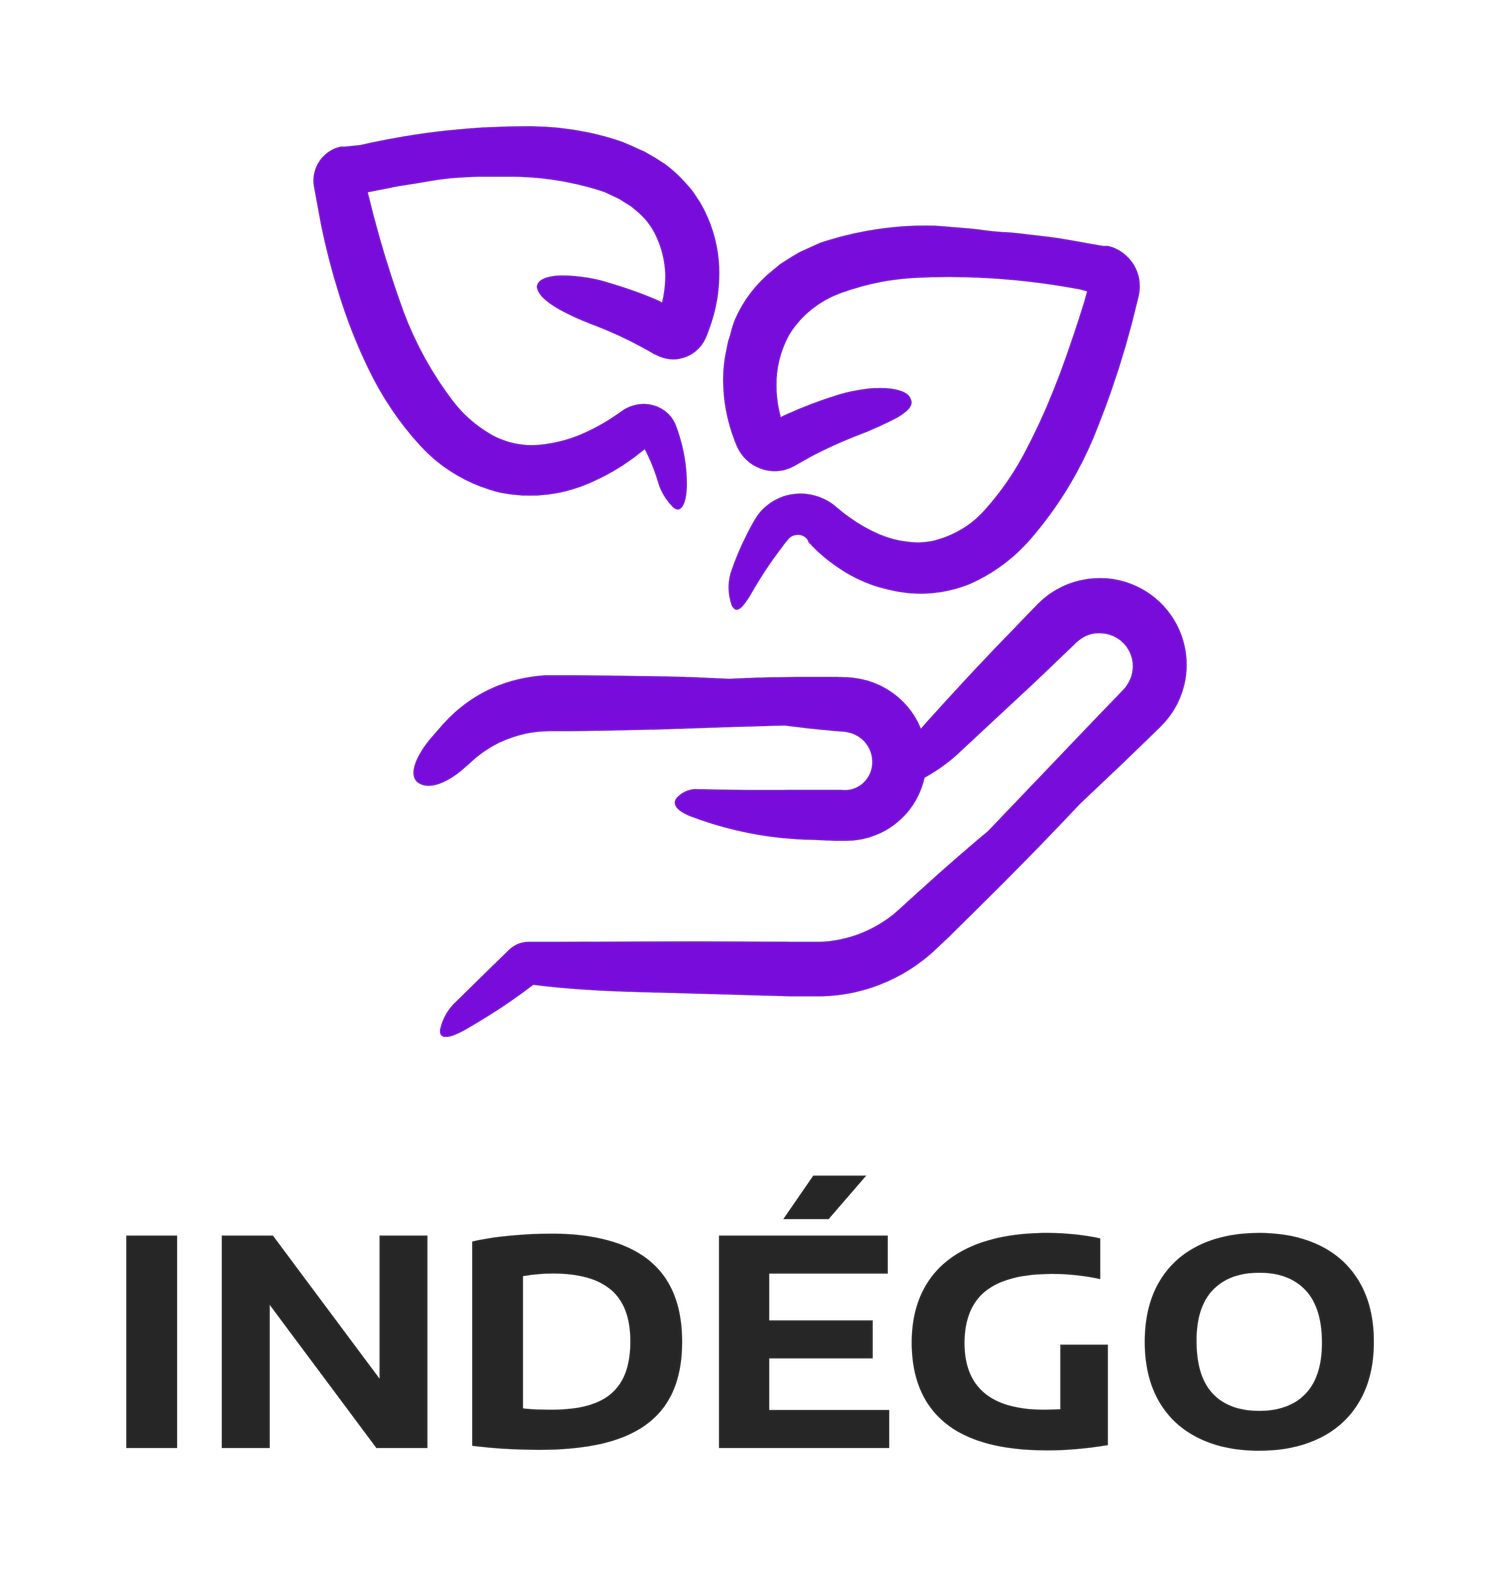 Indego